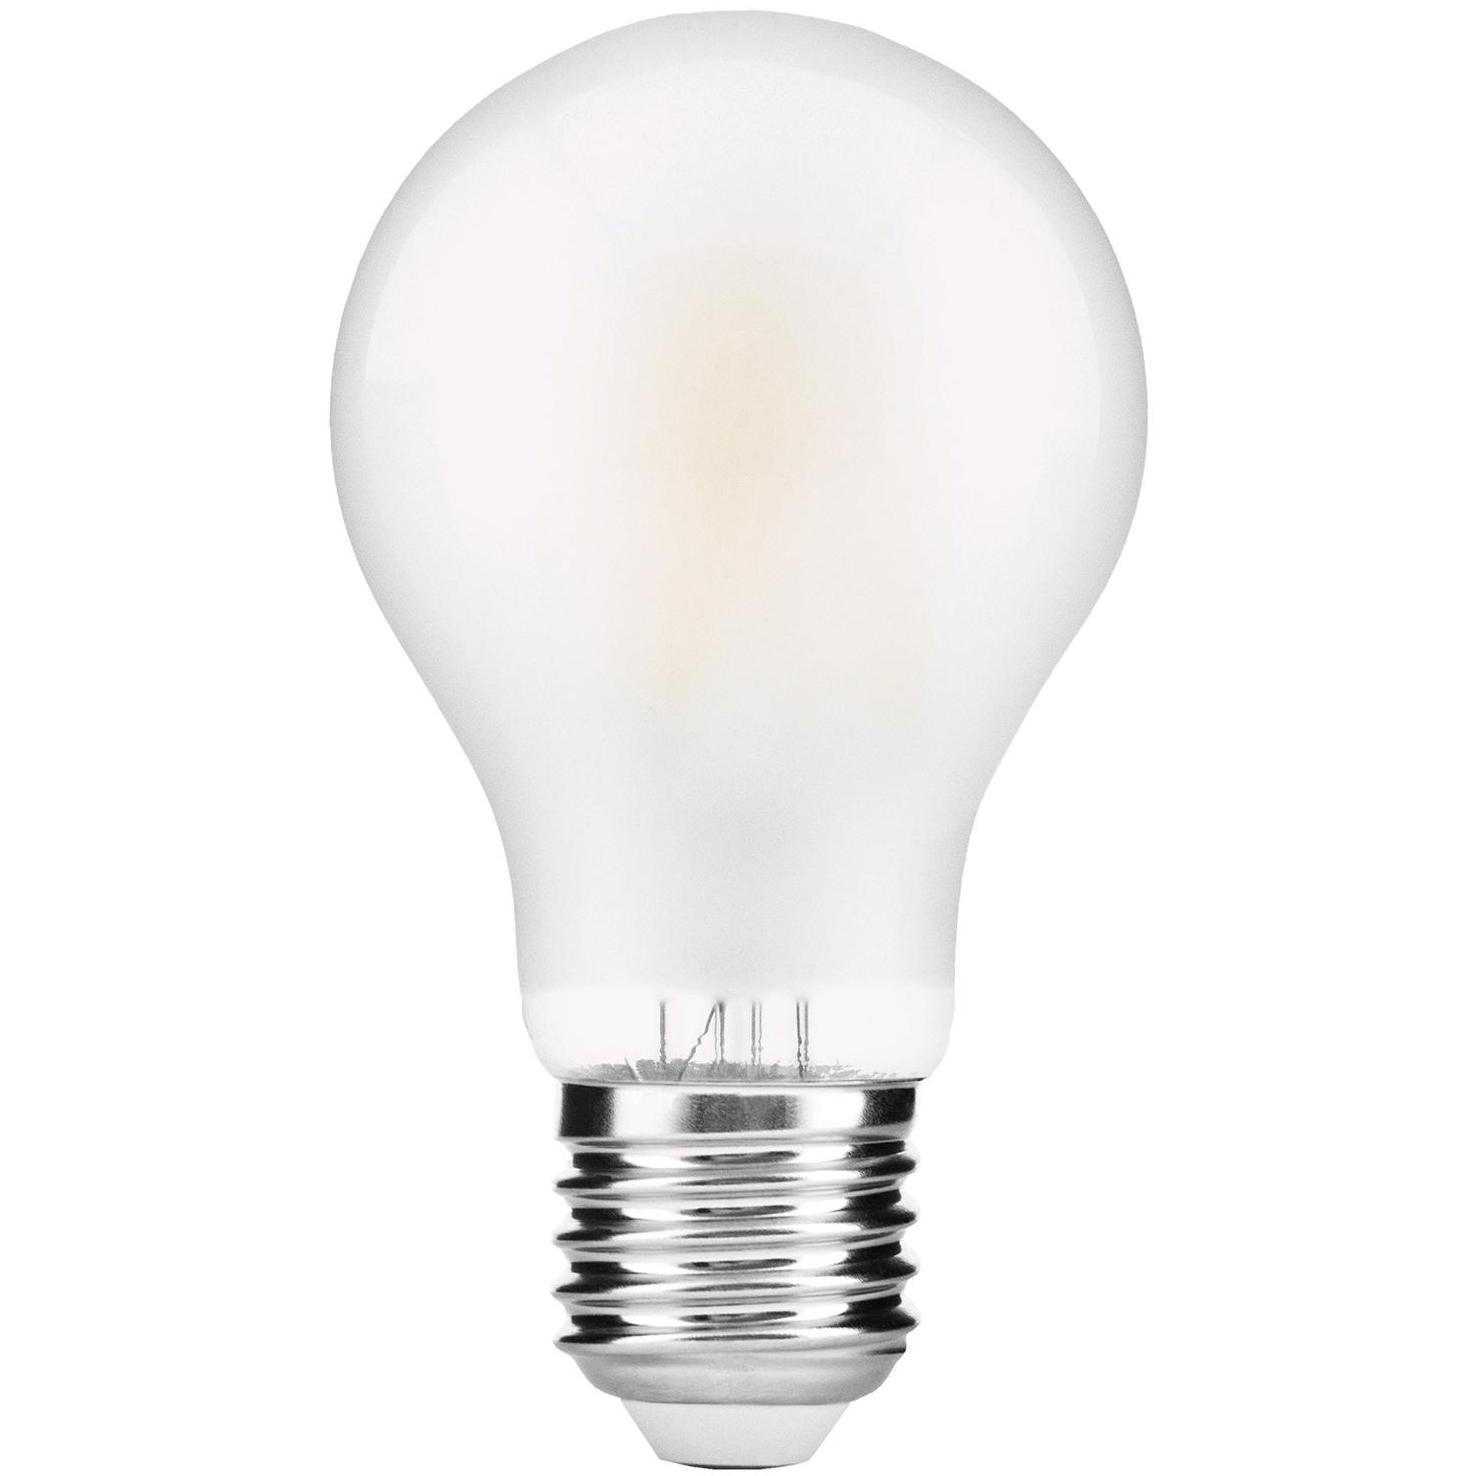 pols het is mooi Op de een of andere manier Filament Lamp Peerlamp Winkel: Bestel goedkoop uw Peerlamp